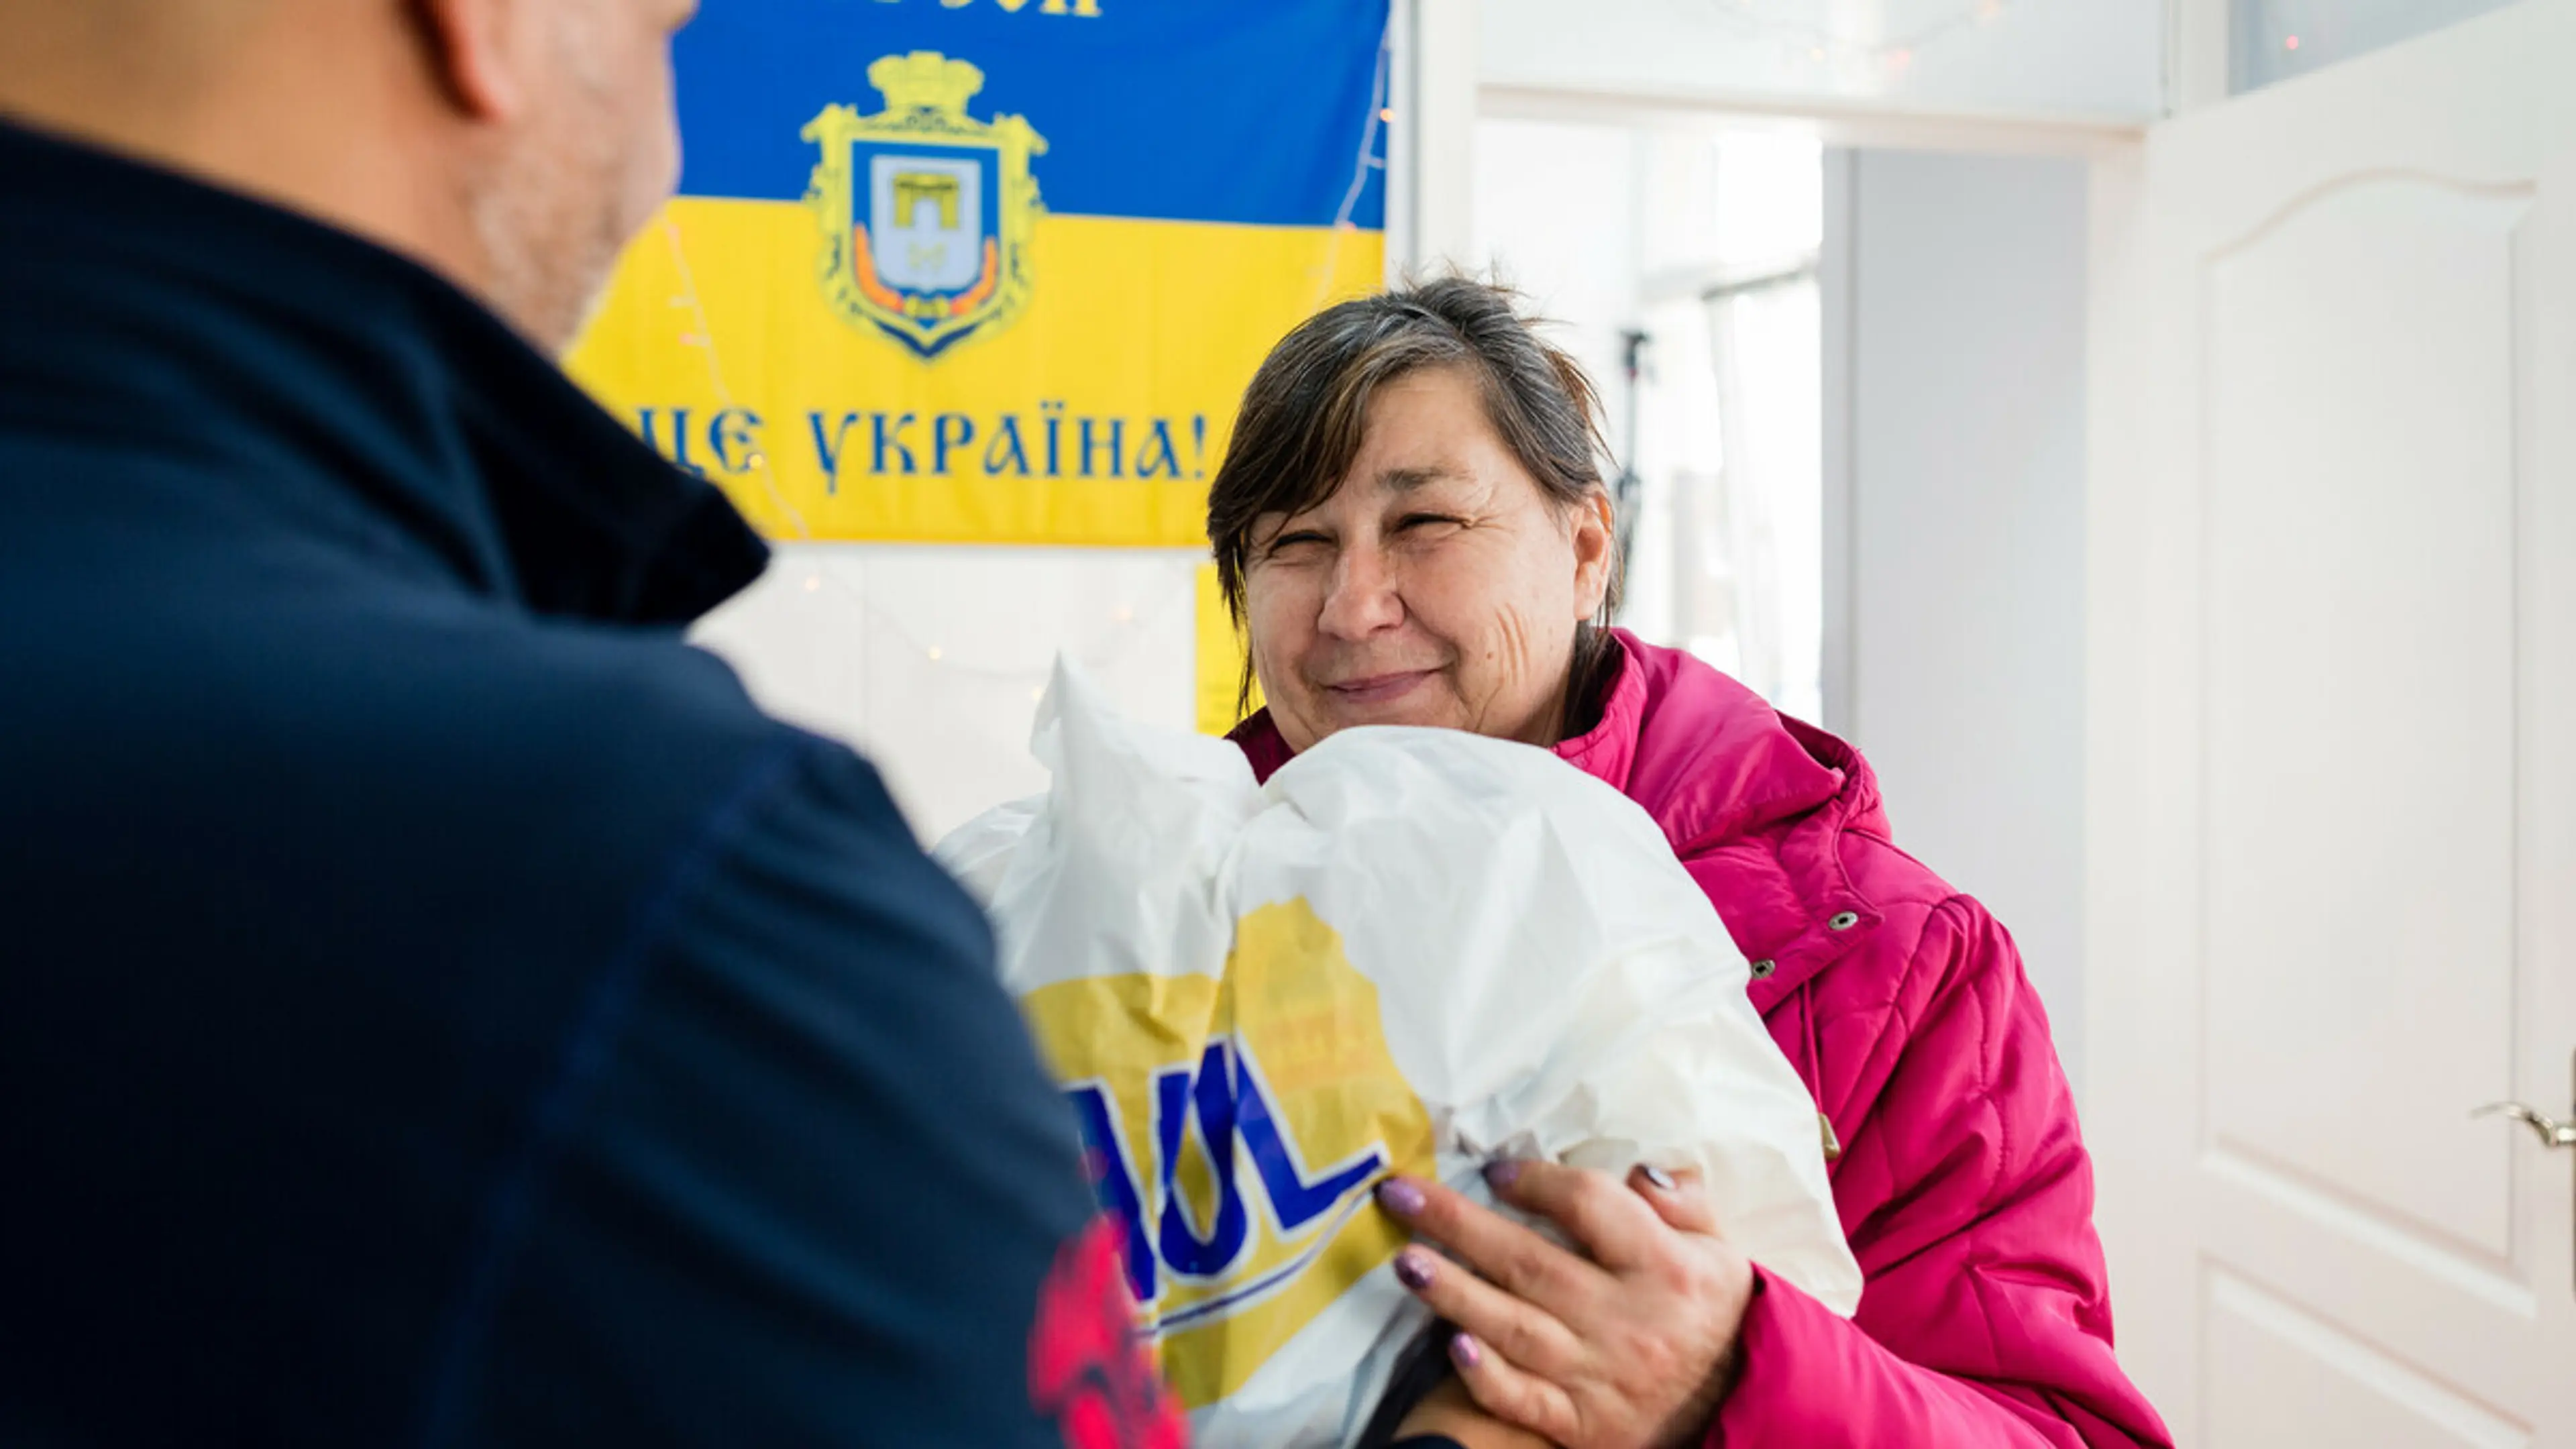 Ivanna DePaul Ukraine food distribution 